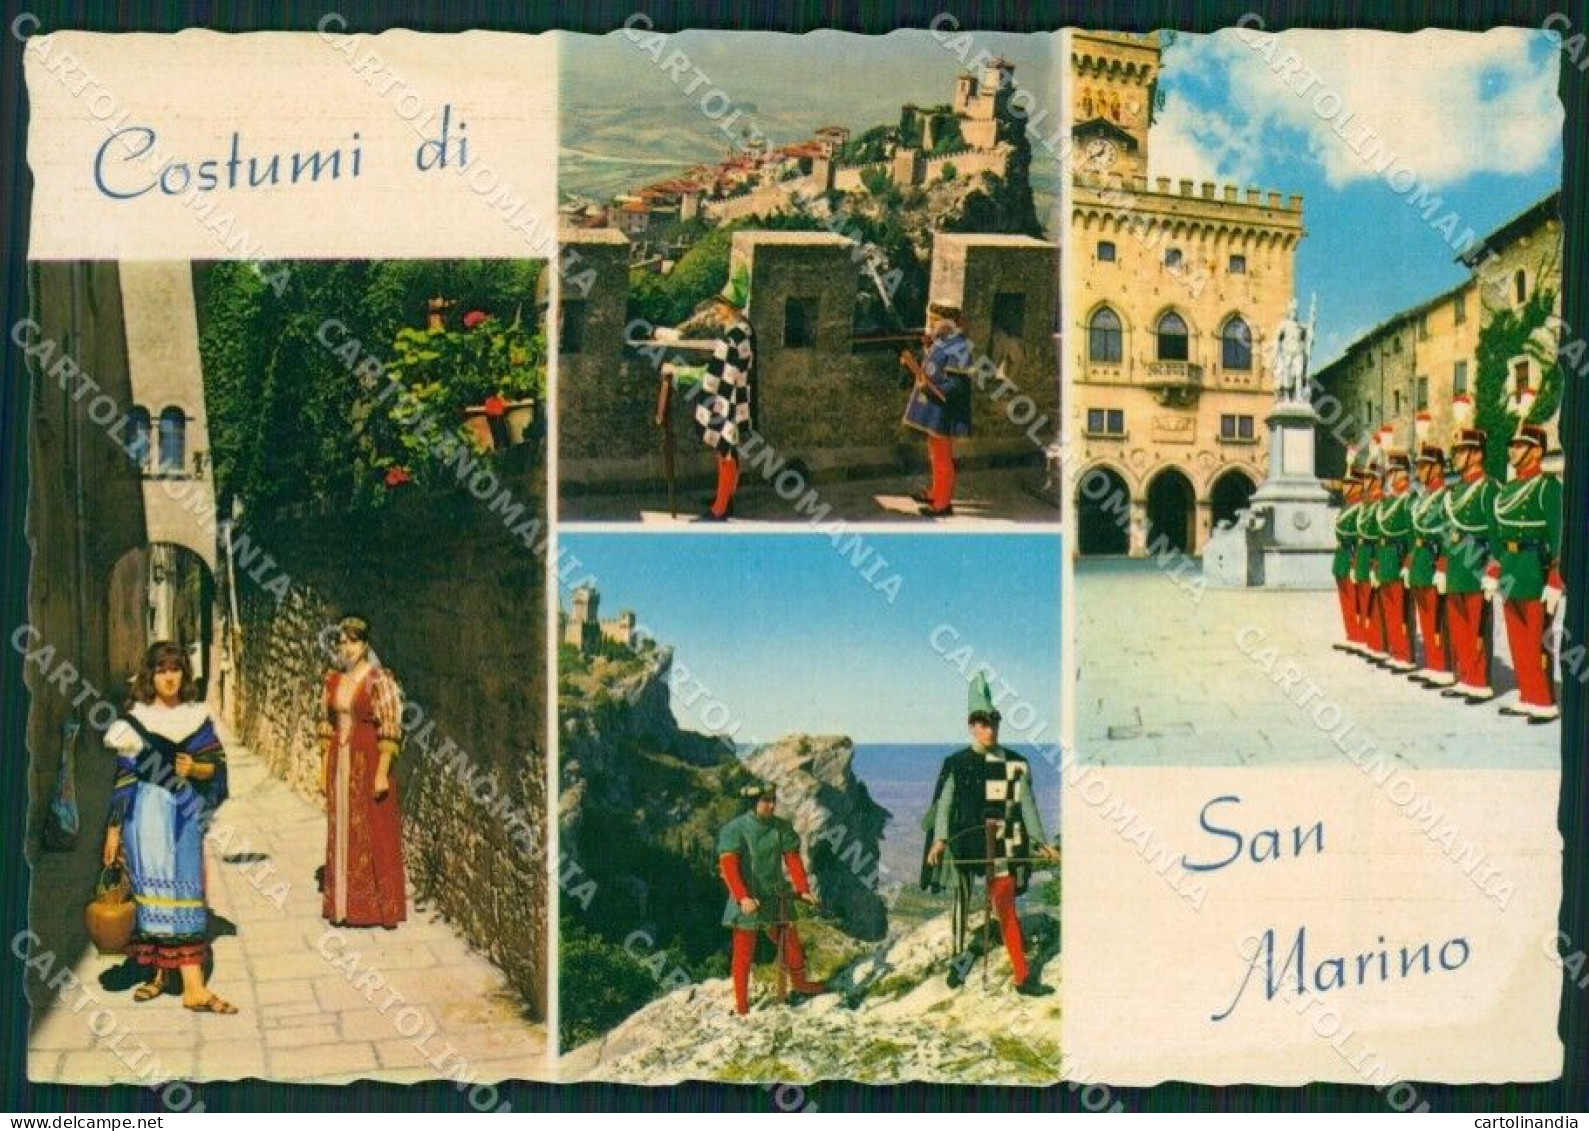 Repubblica Di San Marino Costumi Foto FG Cartolina ZKM8265 - Reggio Nell'Emilia